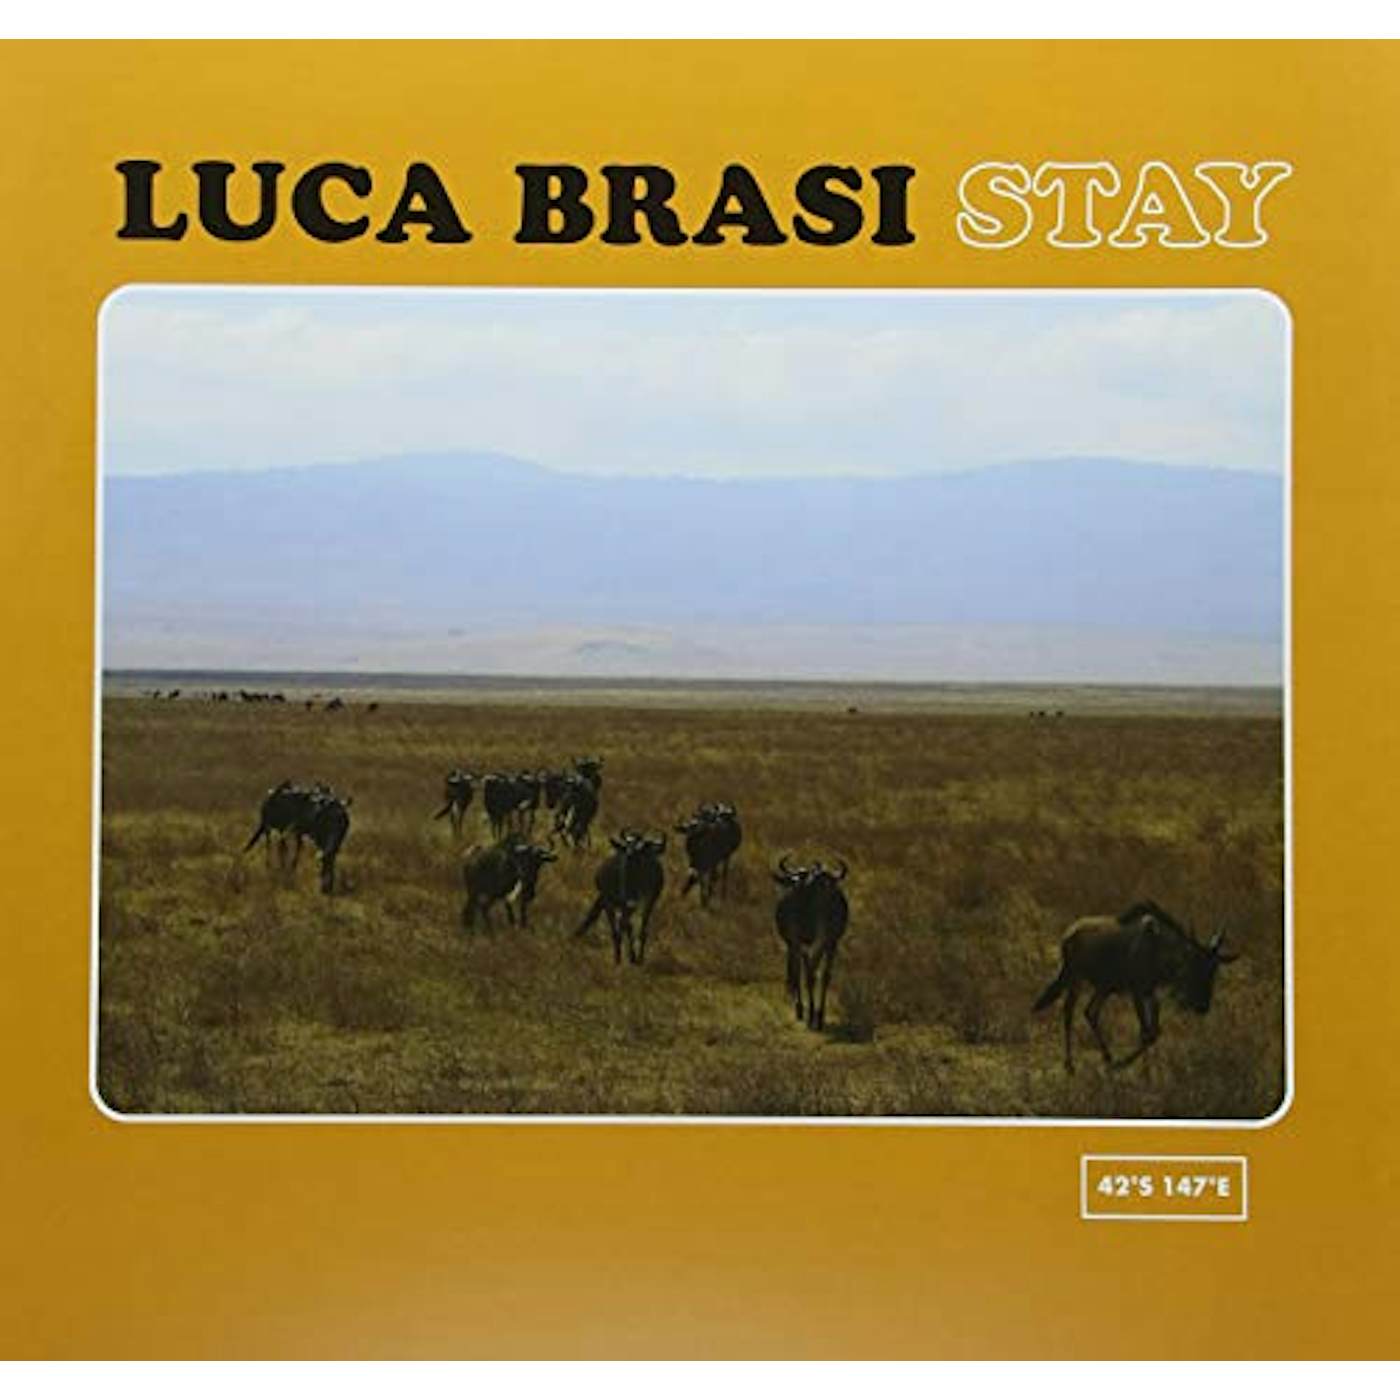 Luca Brasi Stay Vinyl Record